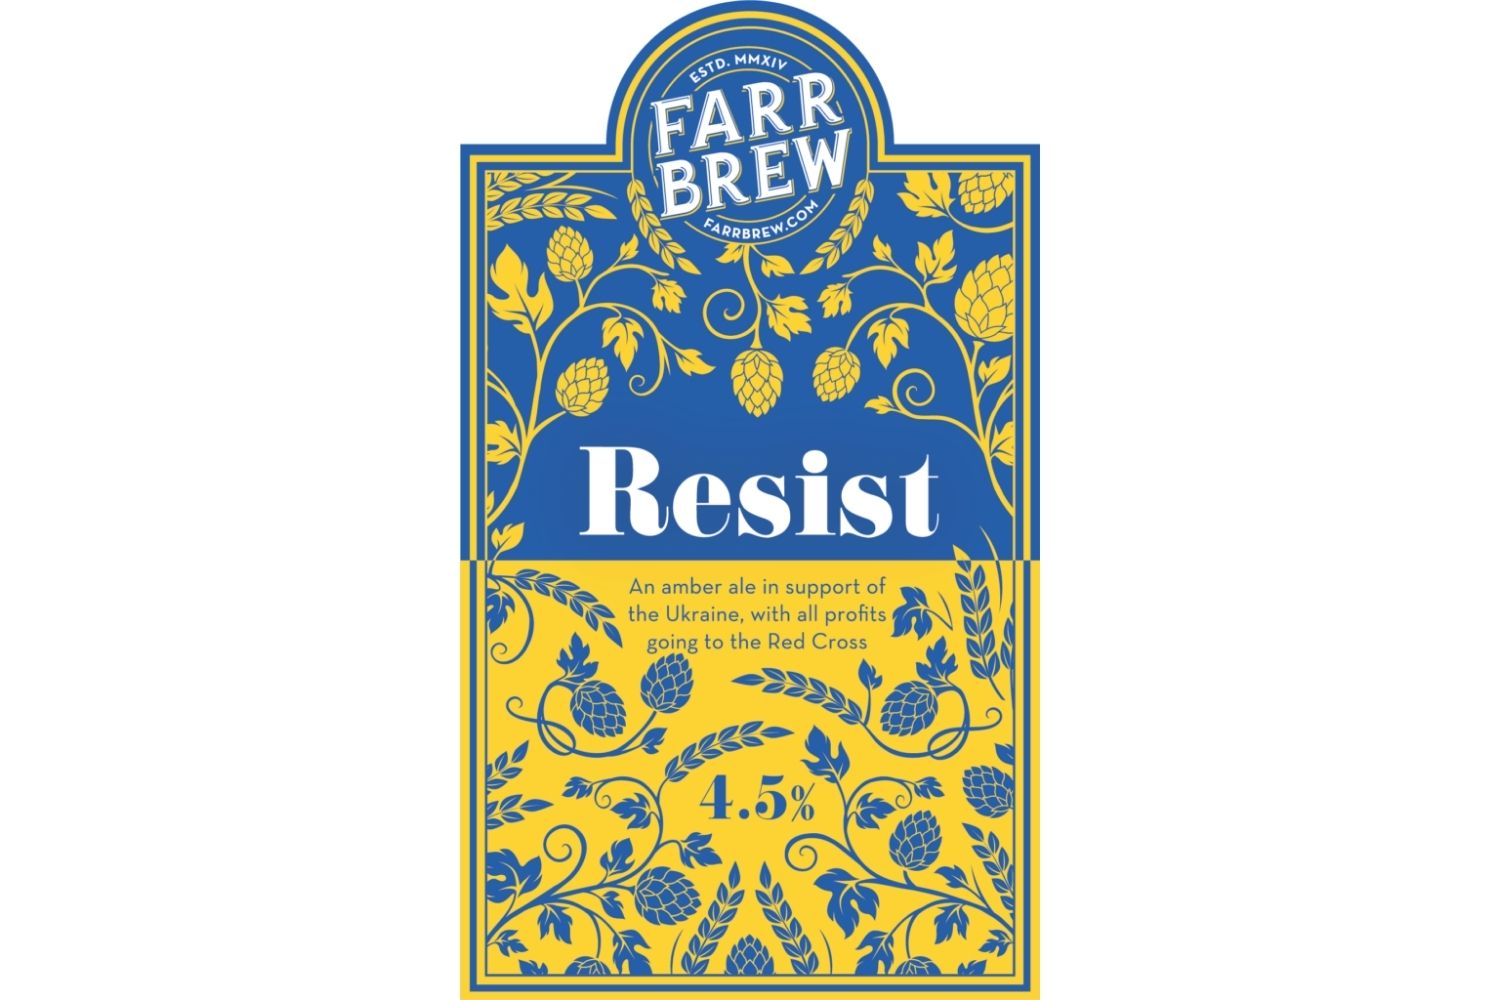 Farr Brew Resist